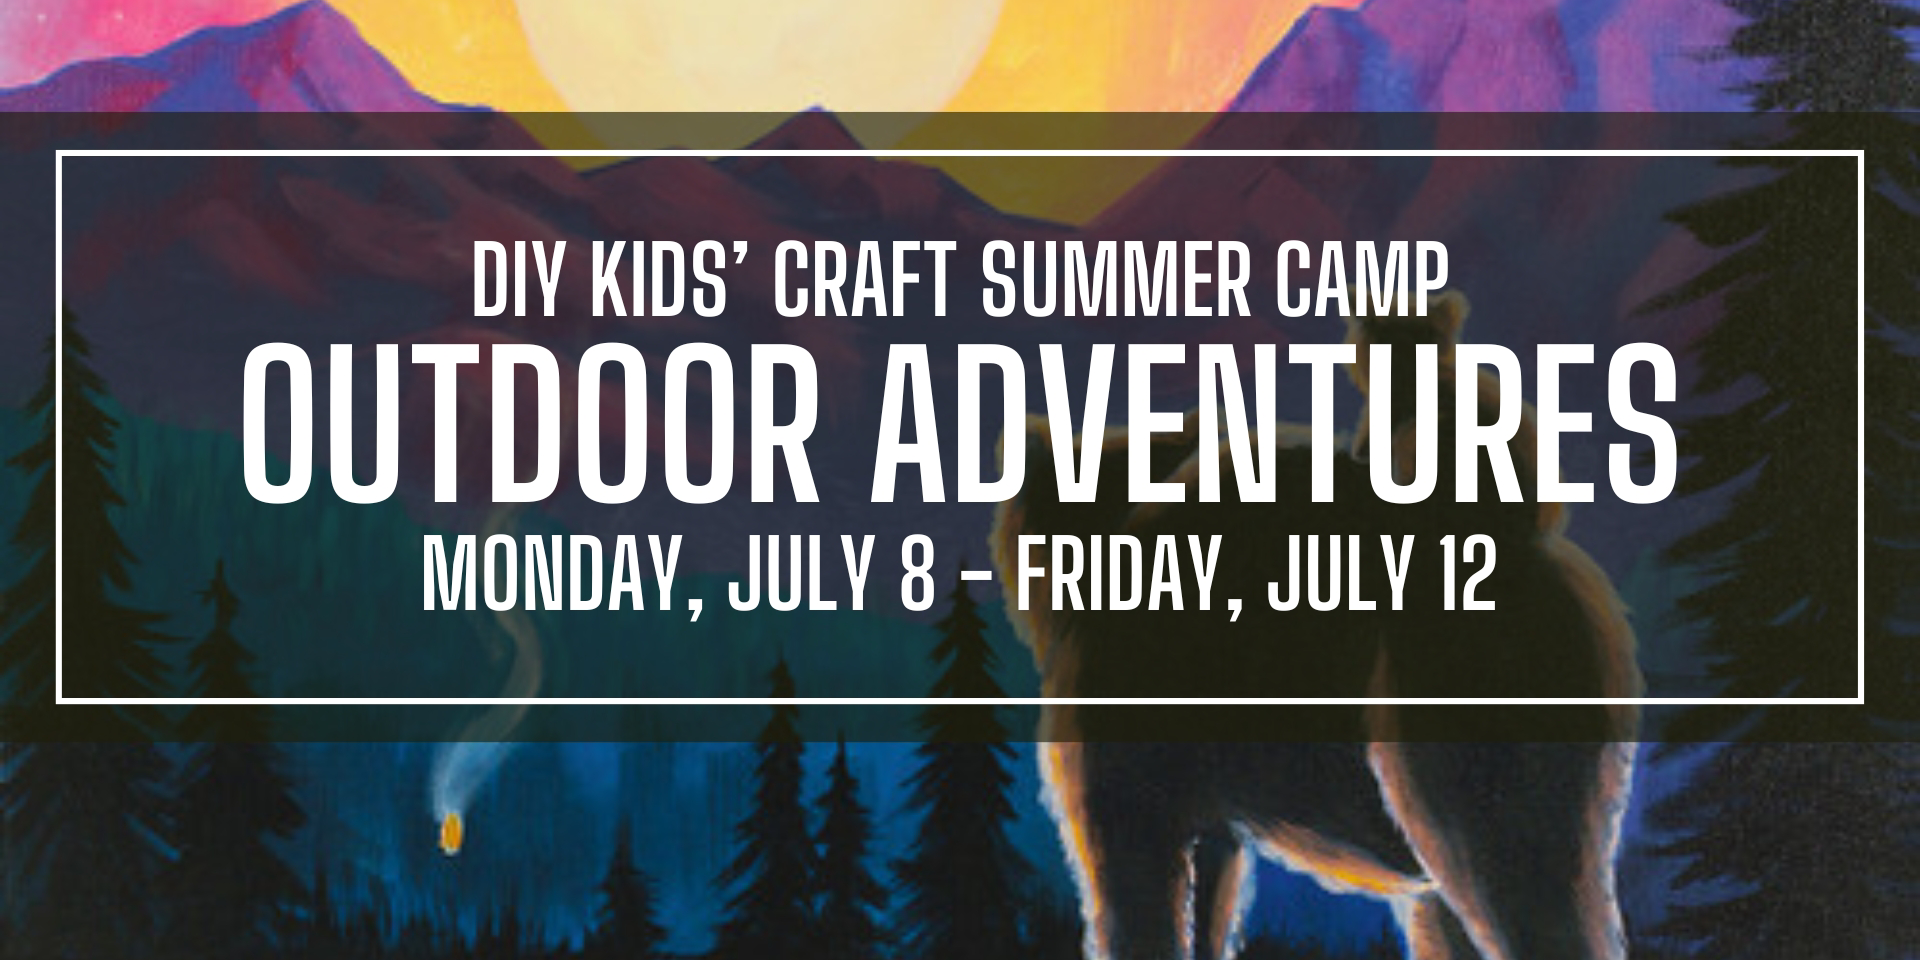 Outdoor Adventures DIY Kids' Craft Summer Camp